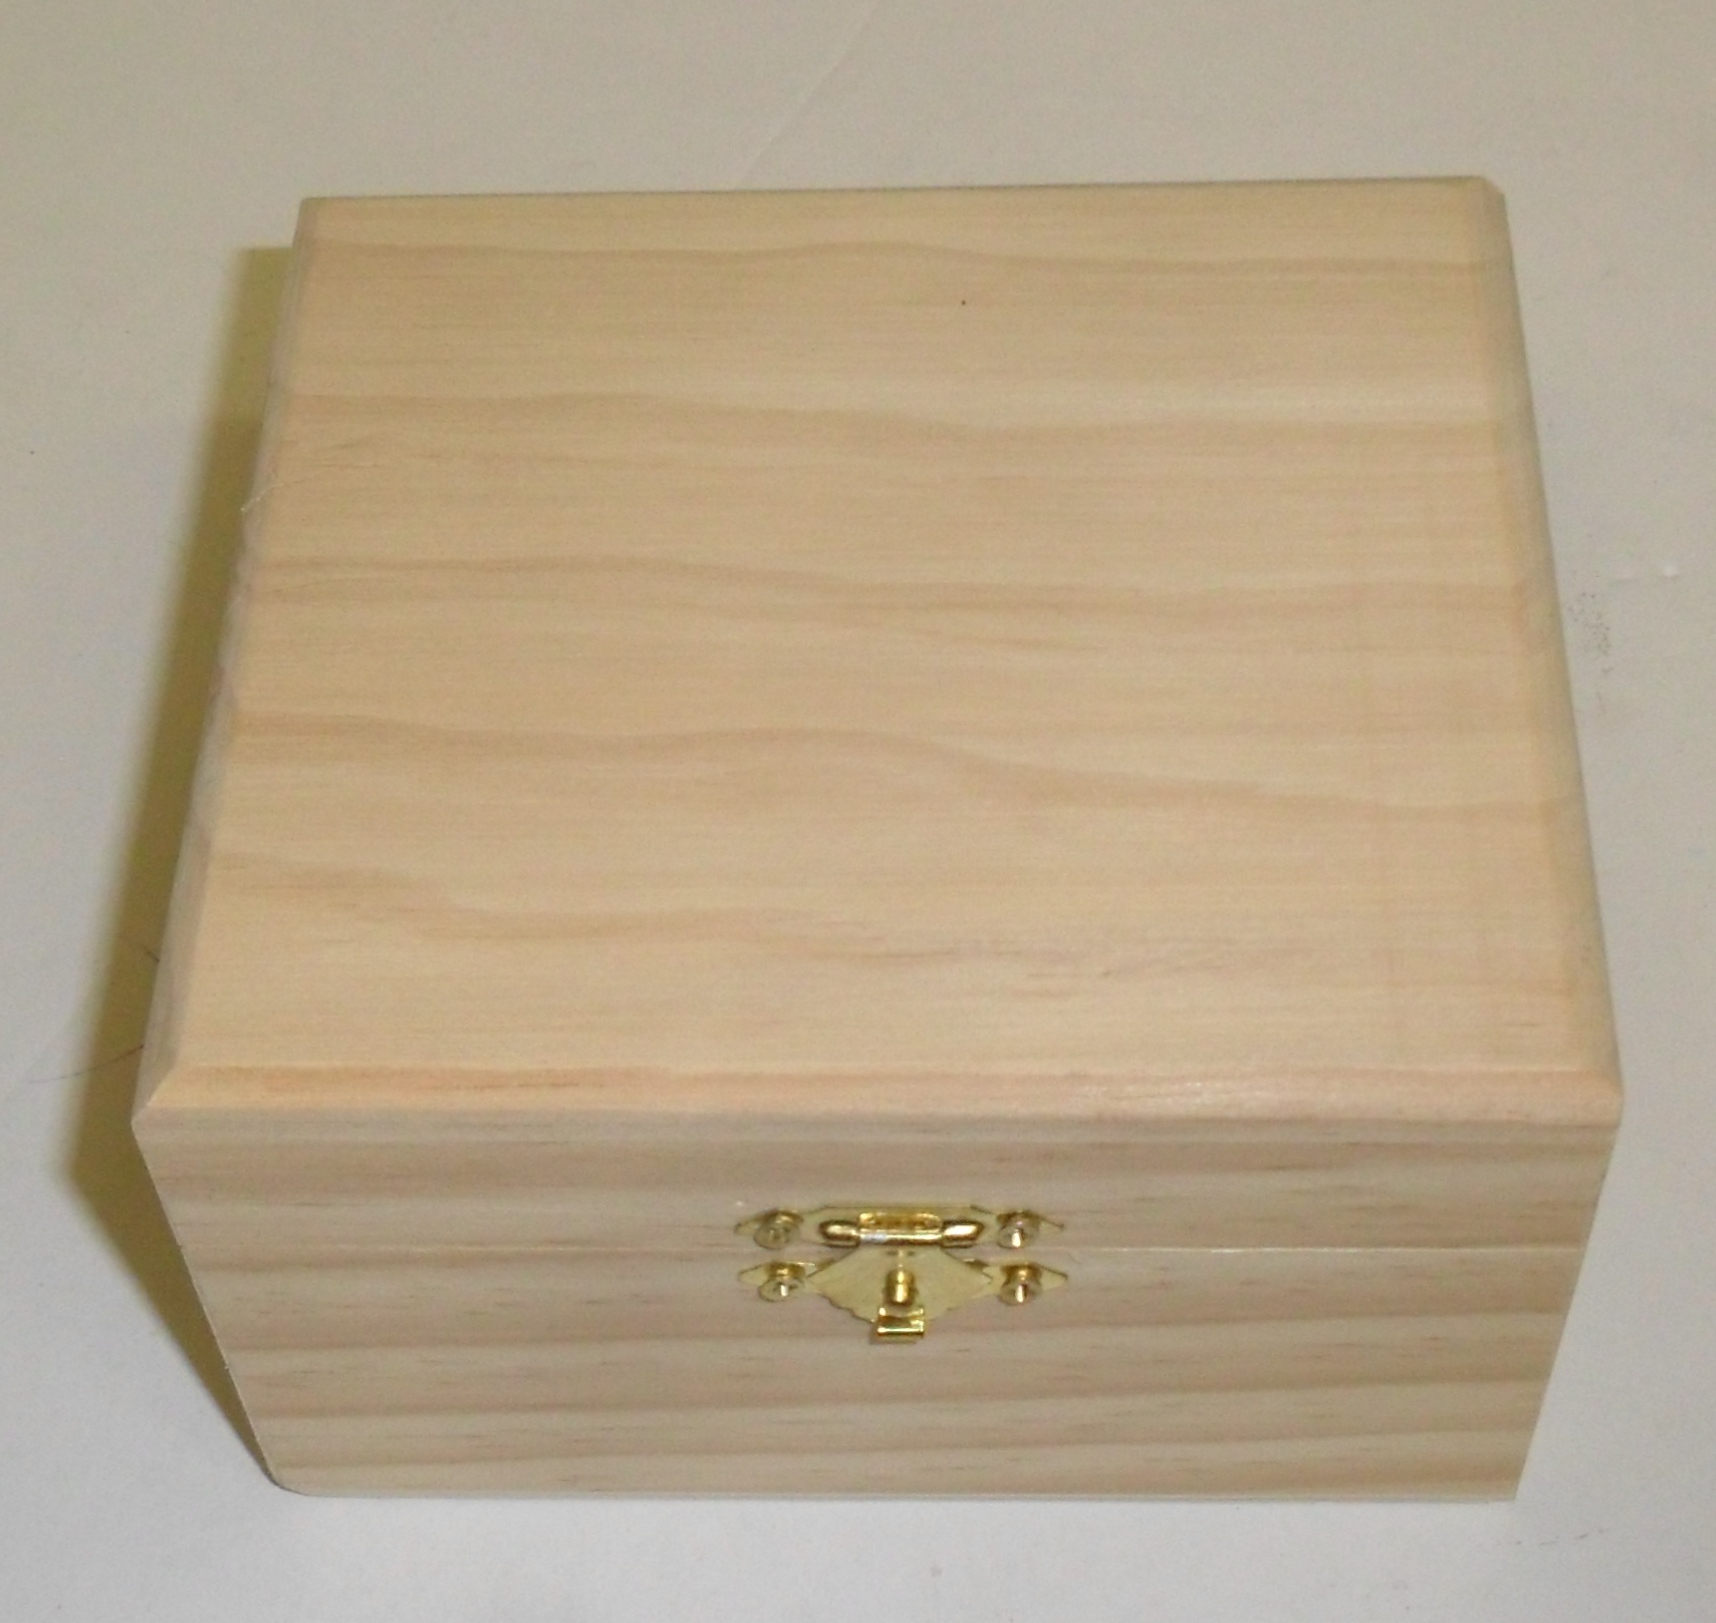 Holzbox mit doppelten Boden - Geheimversteck Kiste